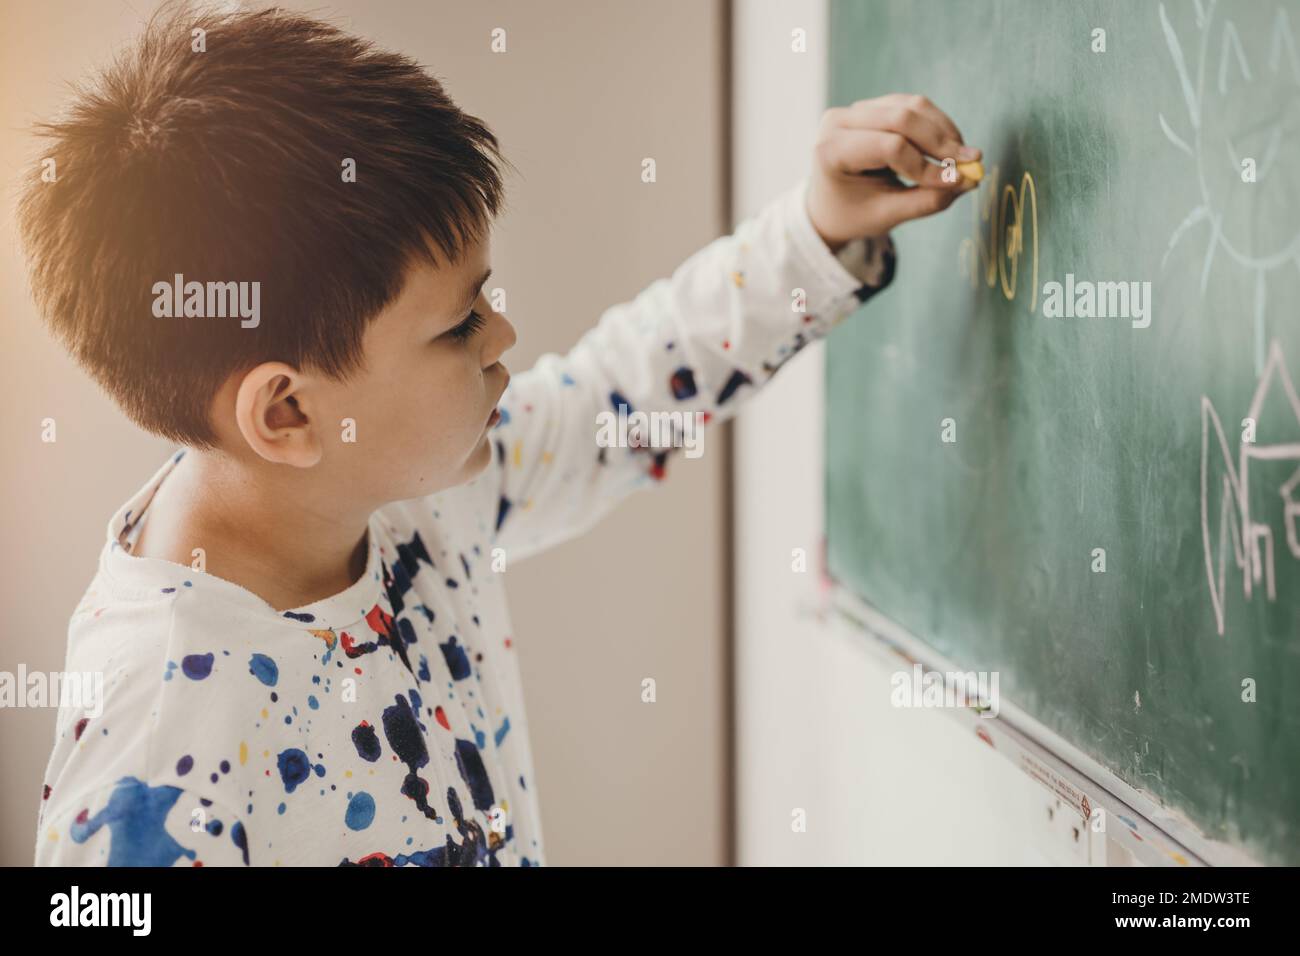 Asiatique garçon sourire heureux appréciez l'éducation à l'école en classe écrivant la réponse aux tableaux de surveillance Banque D'Images